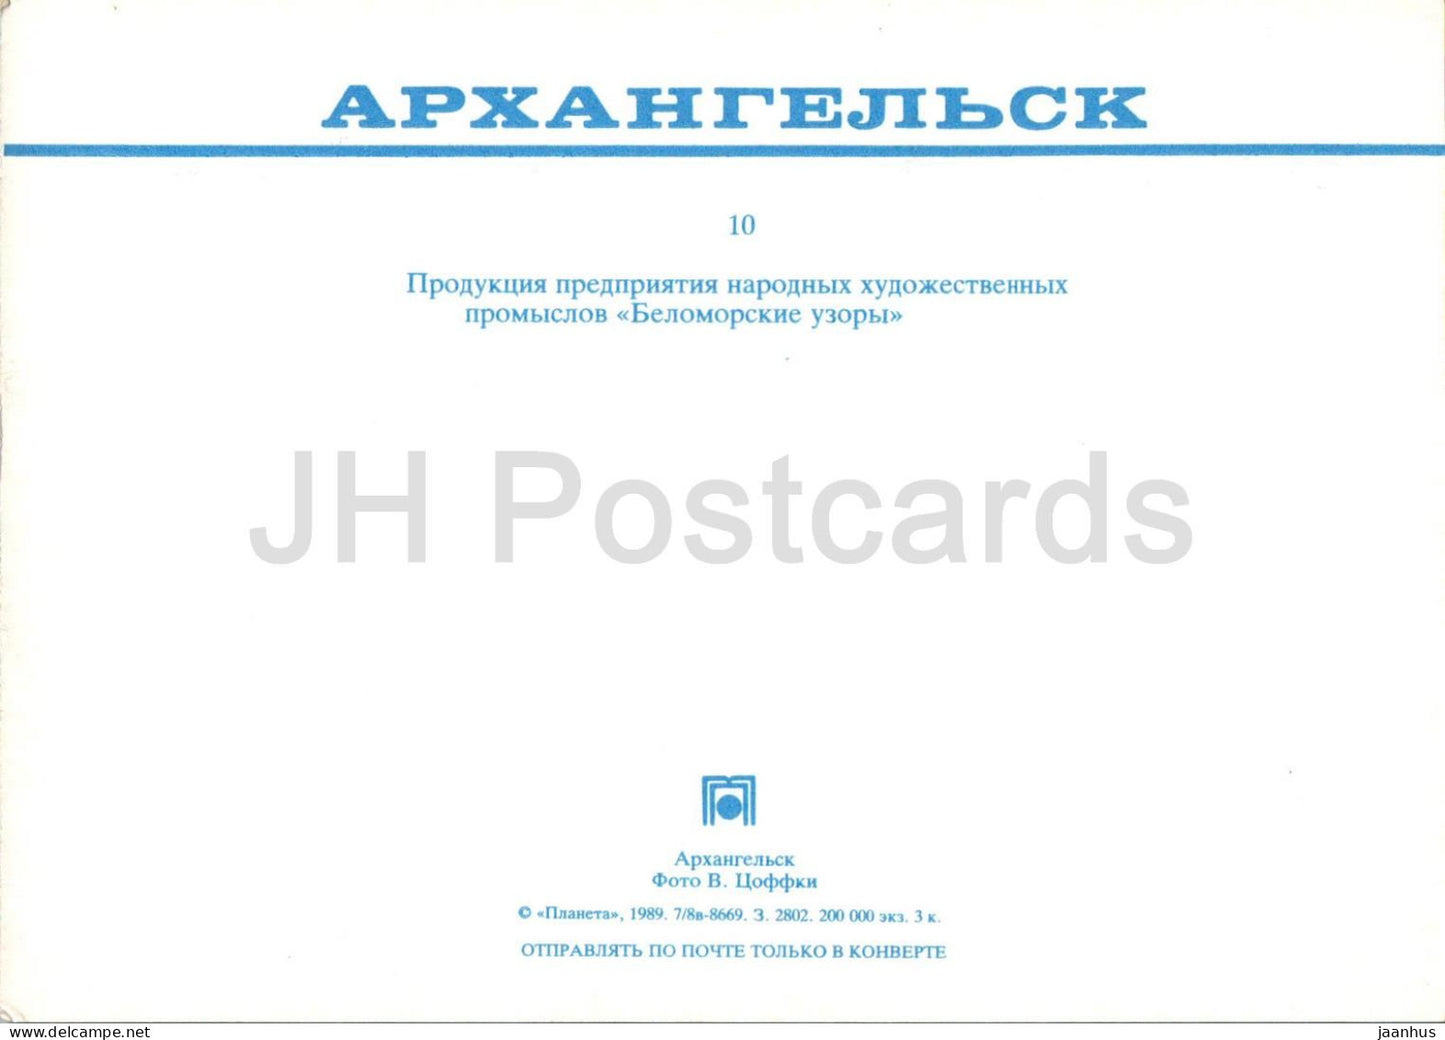 Archangelsk - Produkte des Volkskunsthandwerks Weißes Meer Muster - 1989 - Russland UdSSR - unbenutzt 